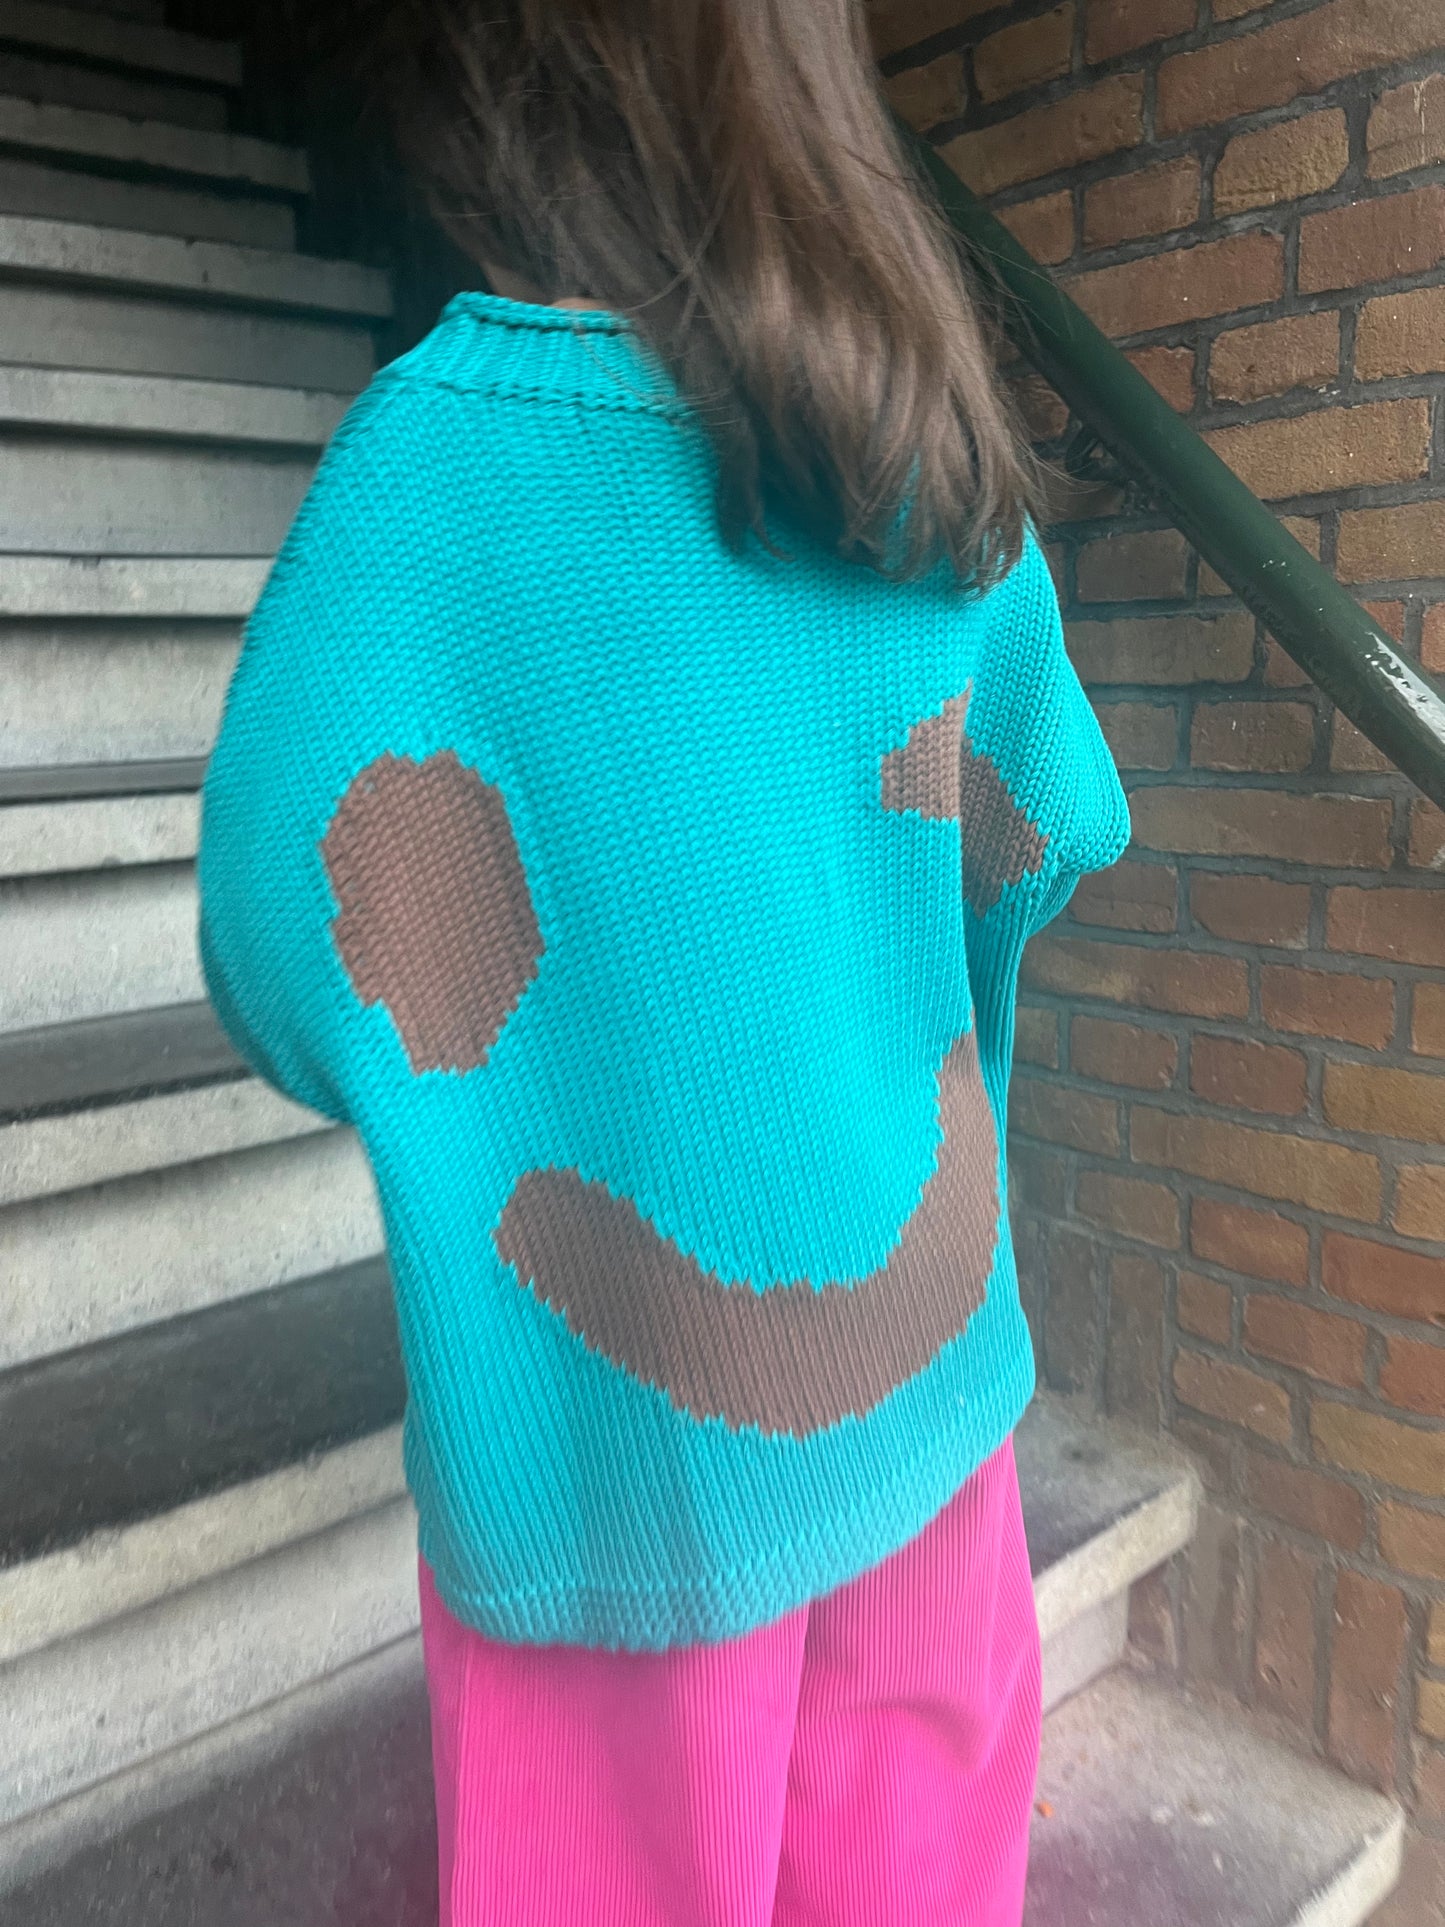 Daily brat - smizing knitted sweater